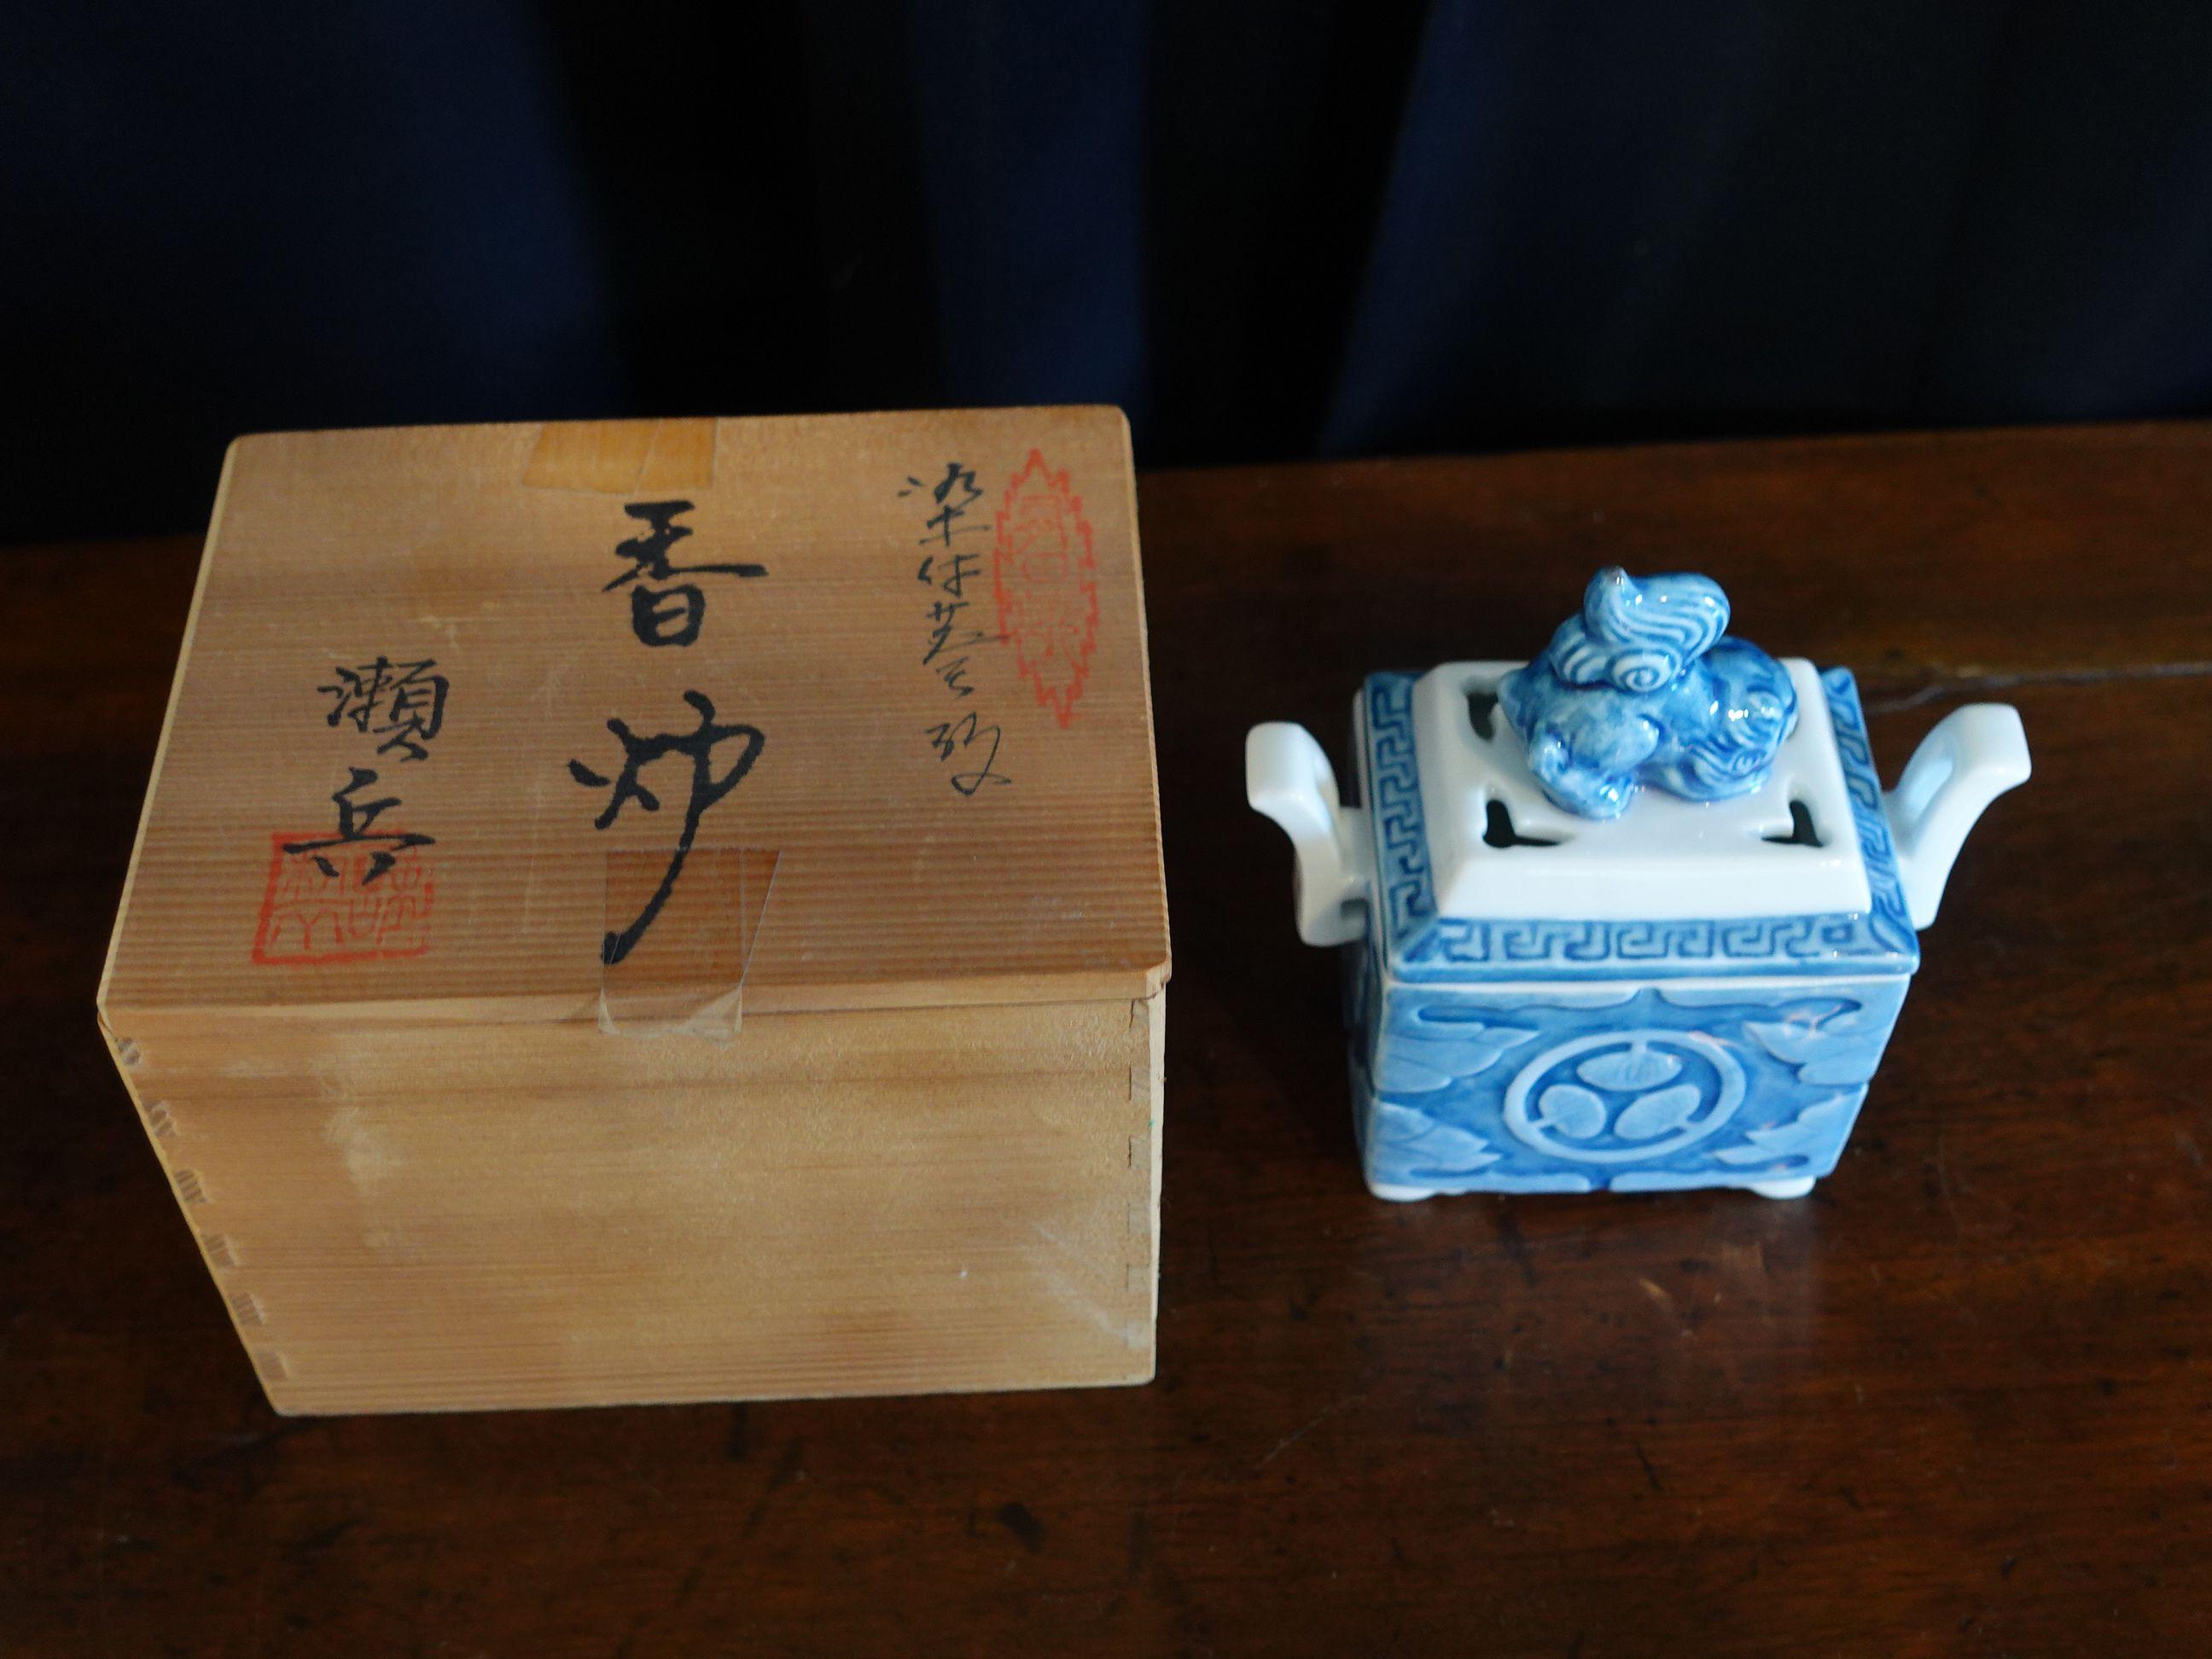 Old Japanese Porcelain Lidded Incense Burner in the Original Box For Sale 3